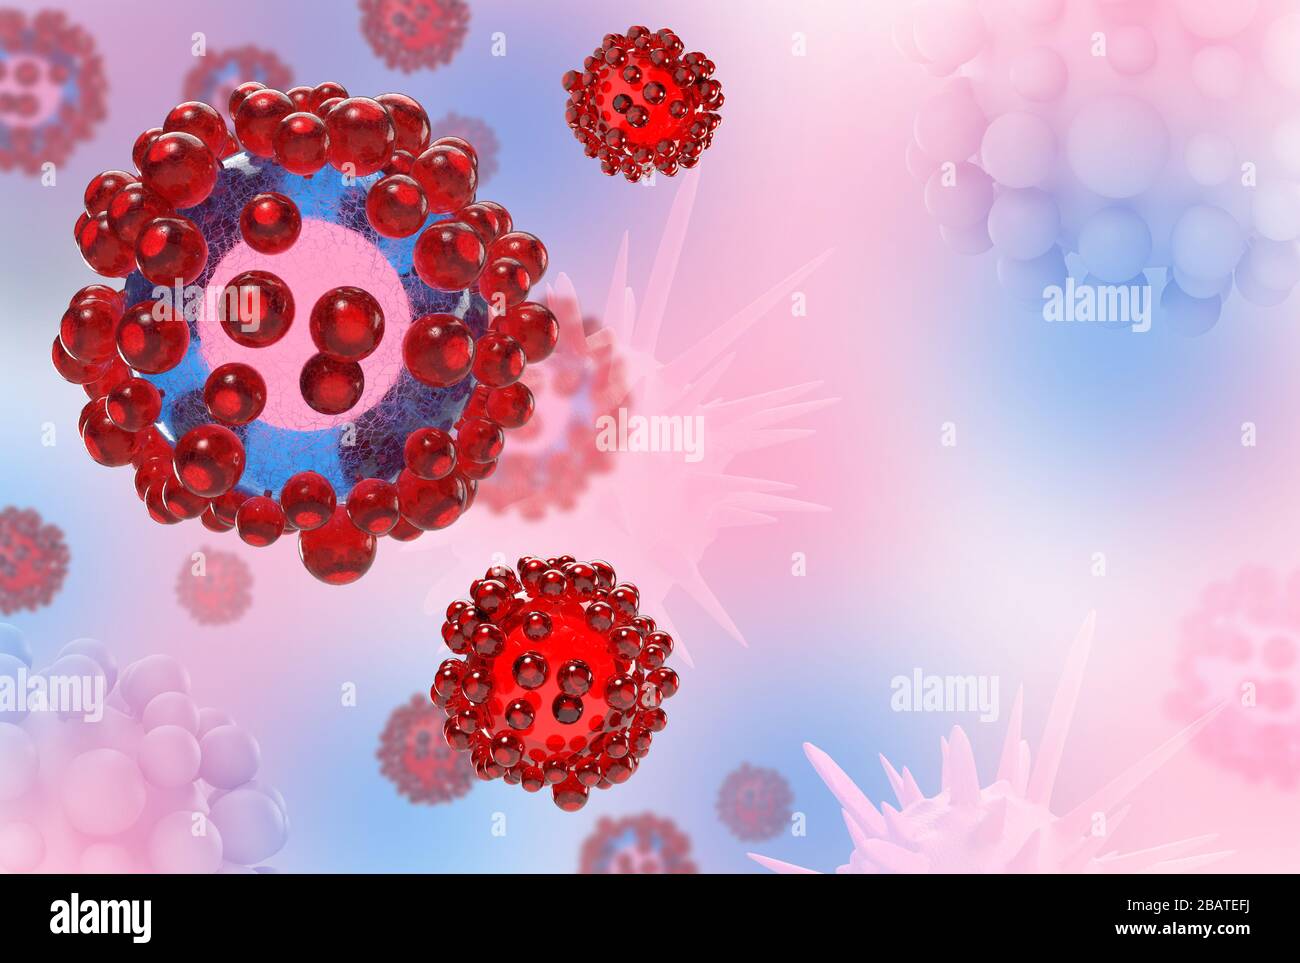 Abstract sciense 3d corona virus outbreak illustration Stock Photo